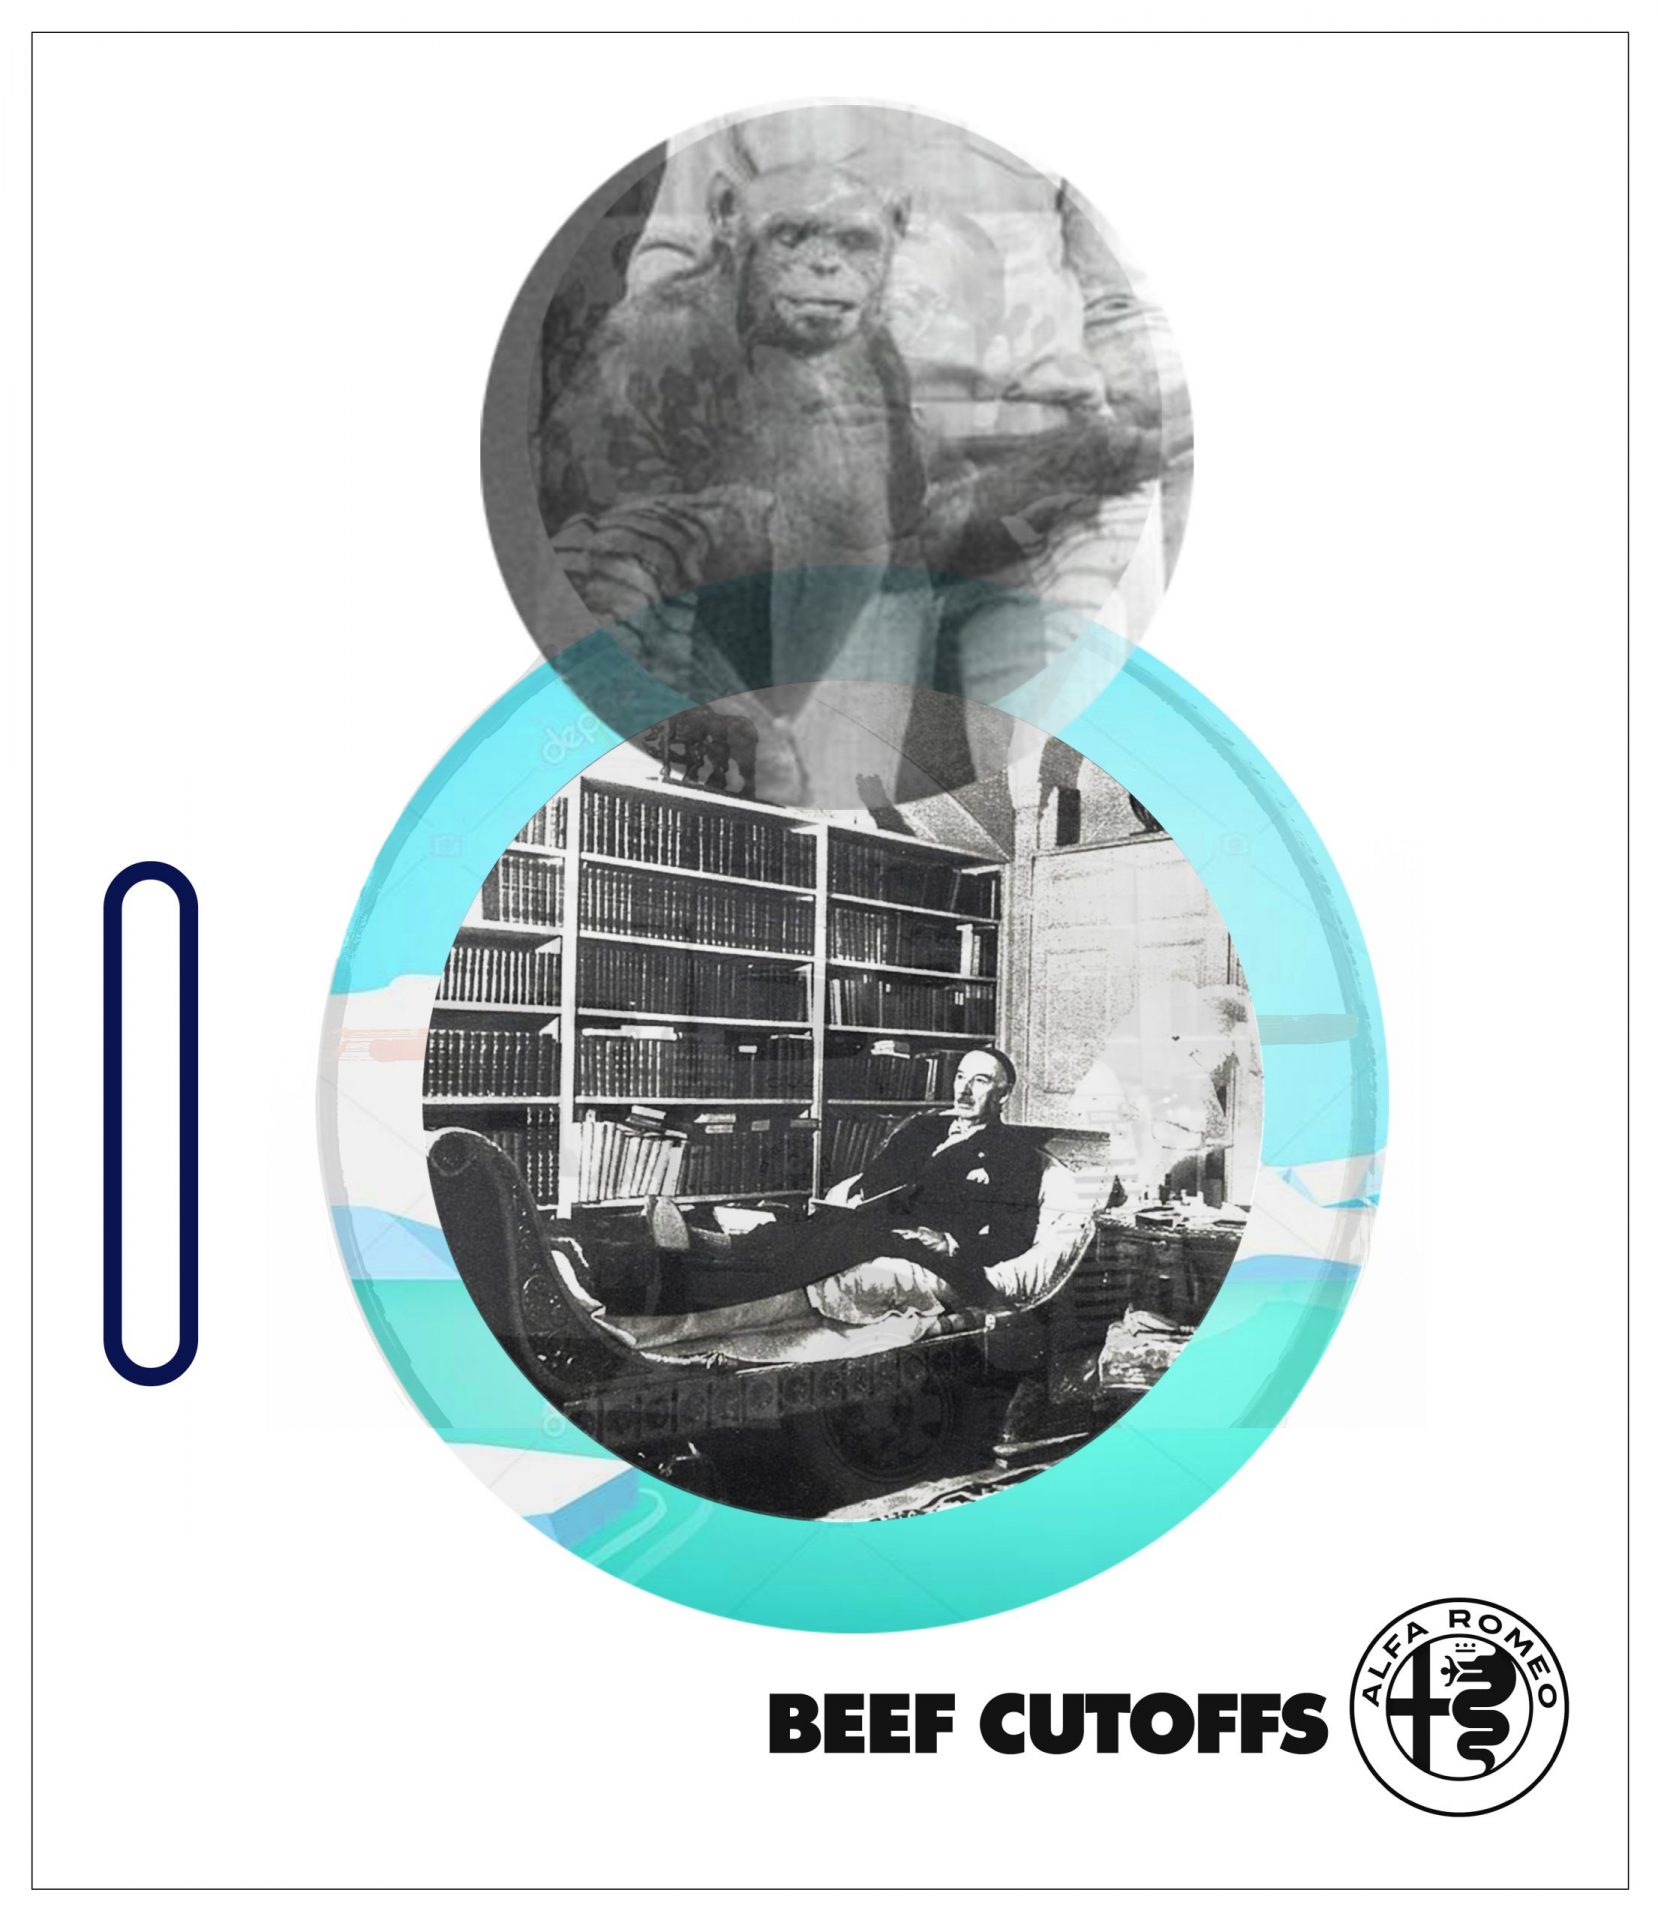 BEEF CUTOFFS